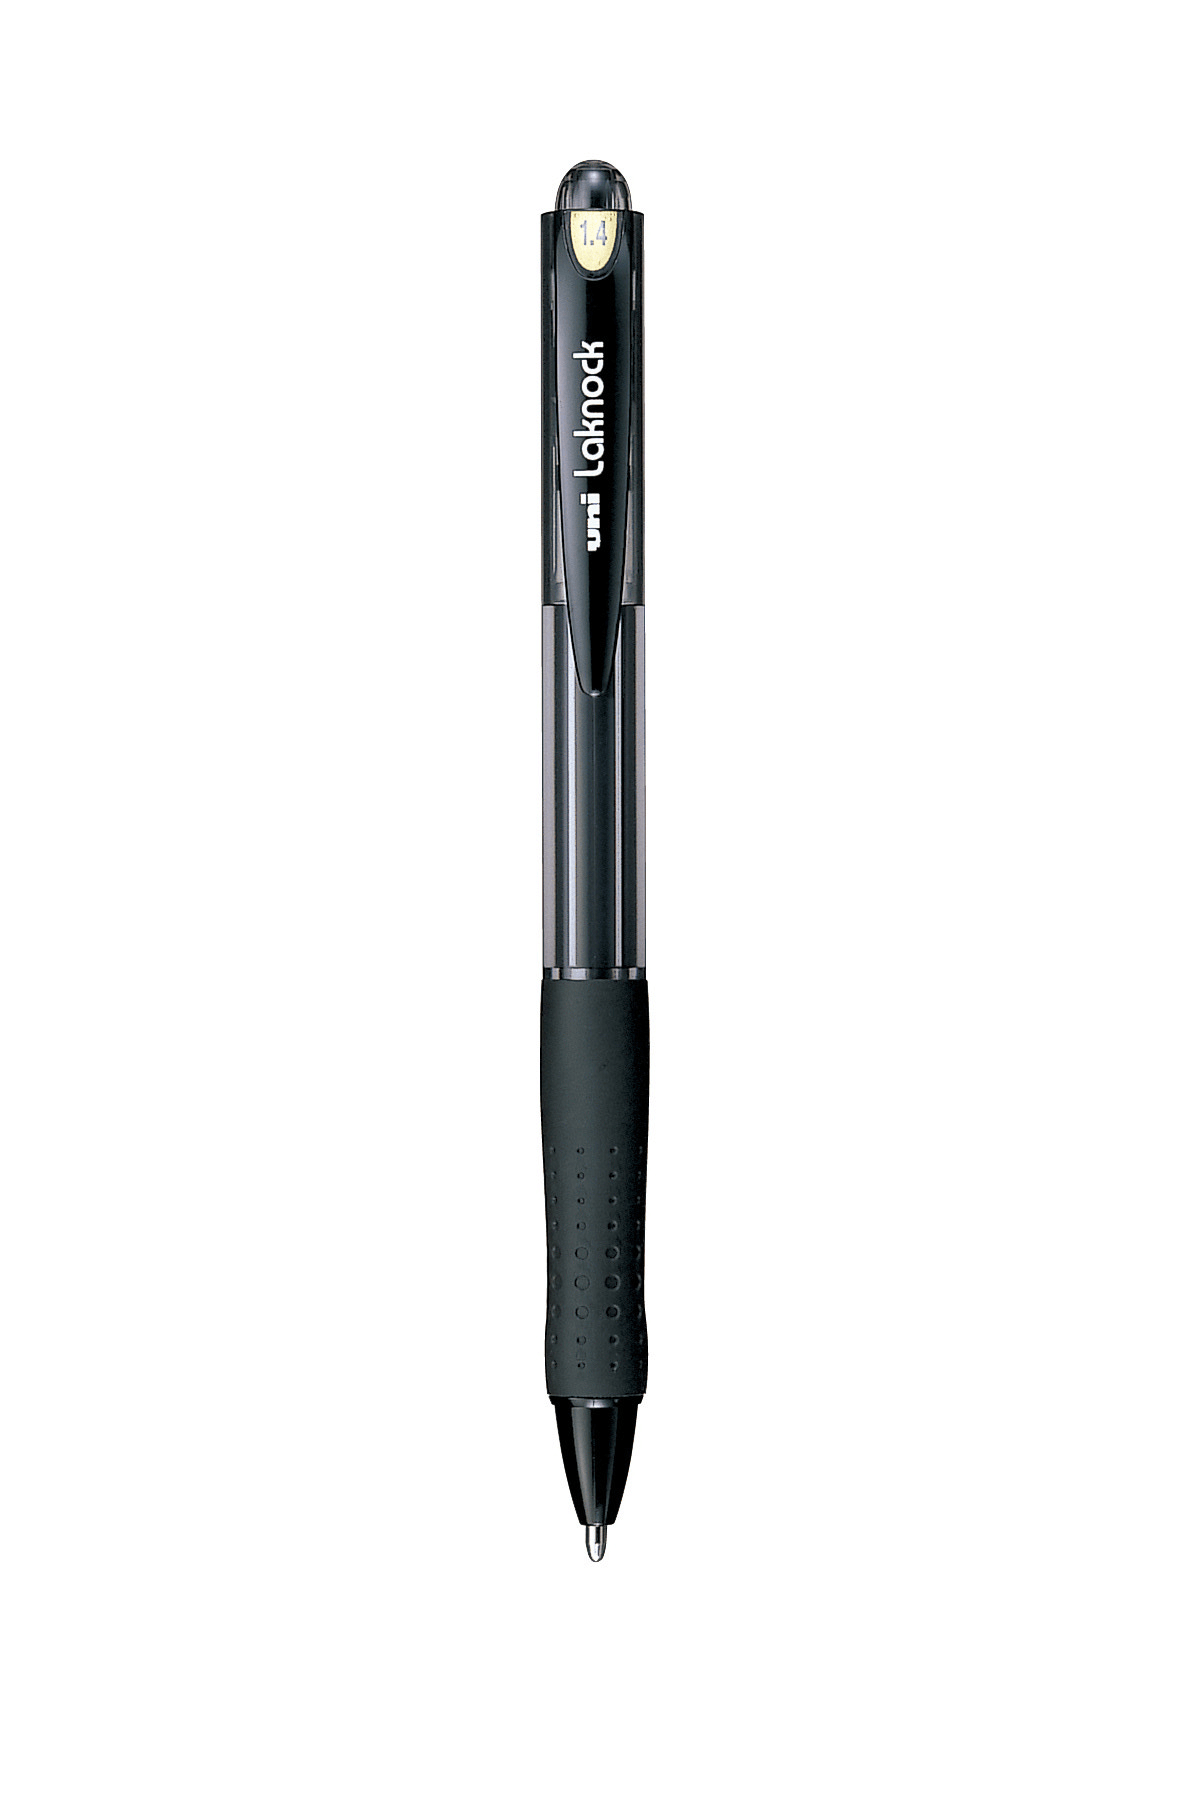 ปากกาลูกลื่นแบบกด uni Laknock SN-100 สีดำ 1.4 มม.